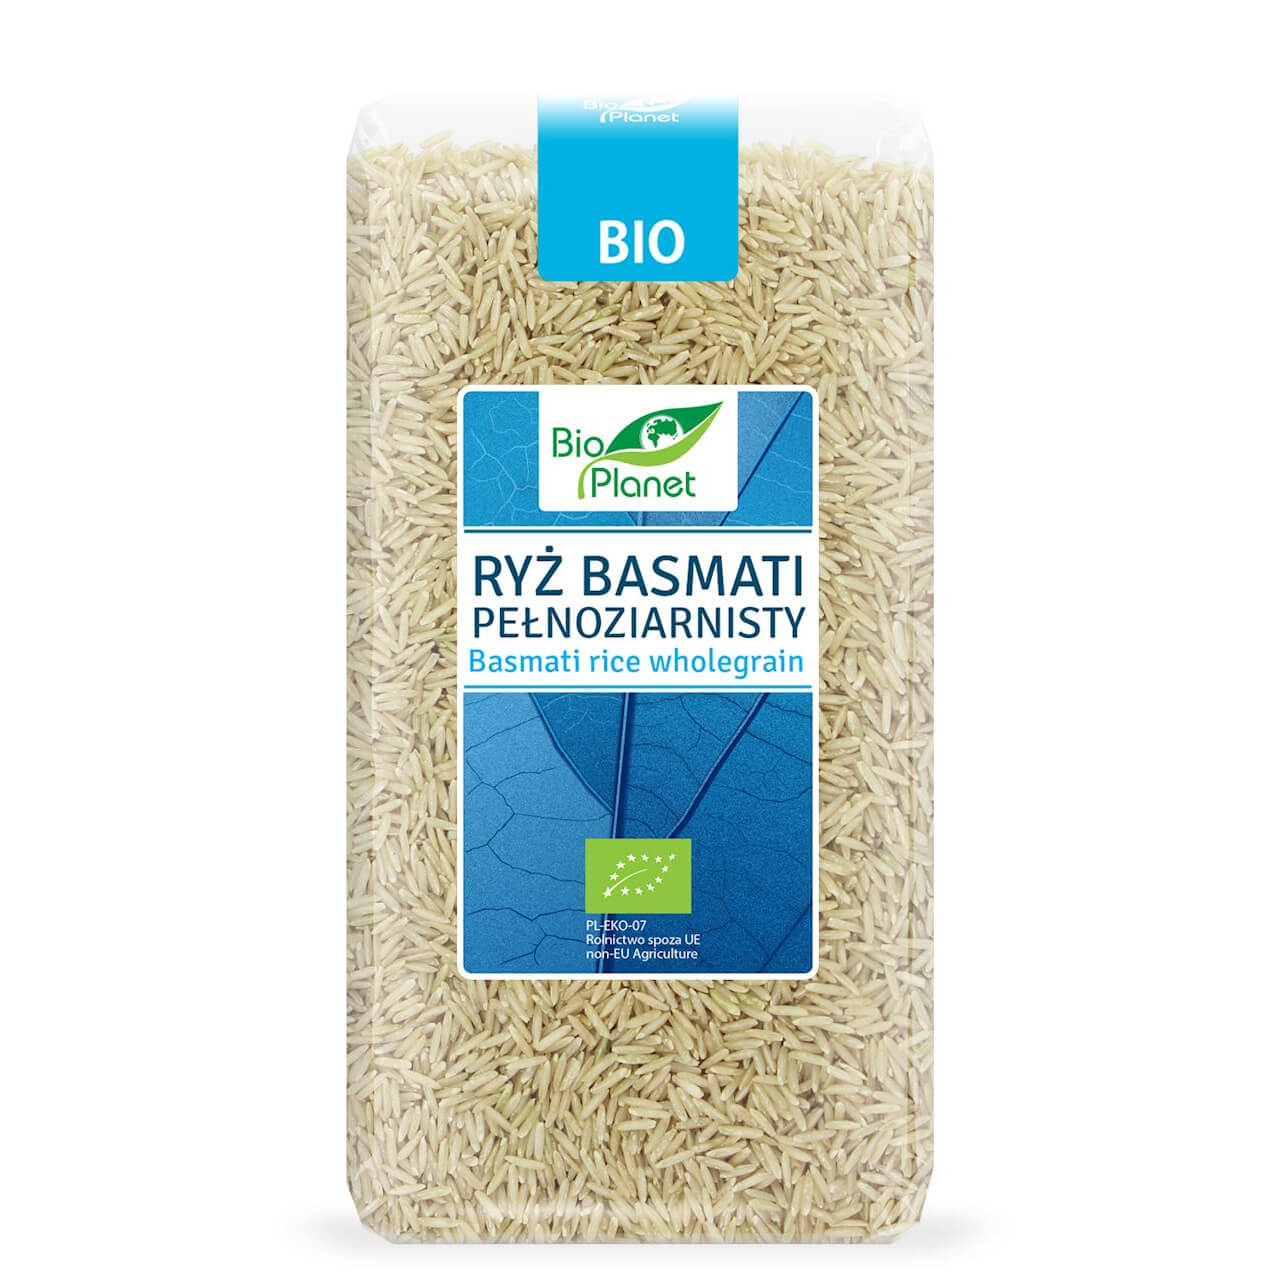 Ryż basmati pełnoziarnisty BIO 500 g - Bio Planet